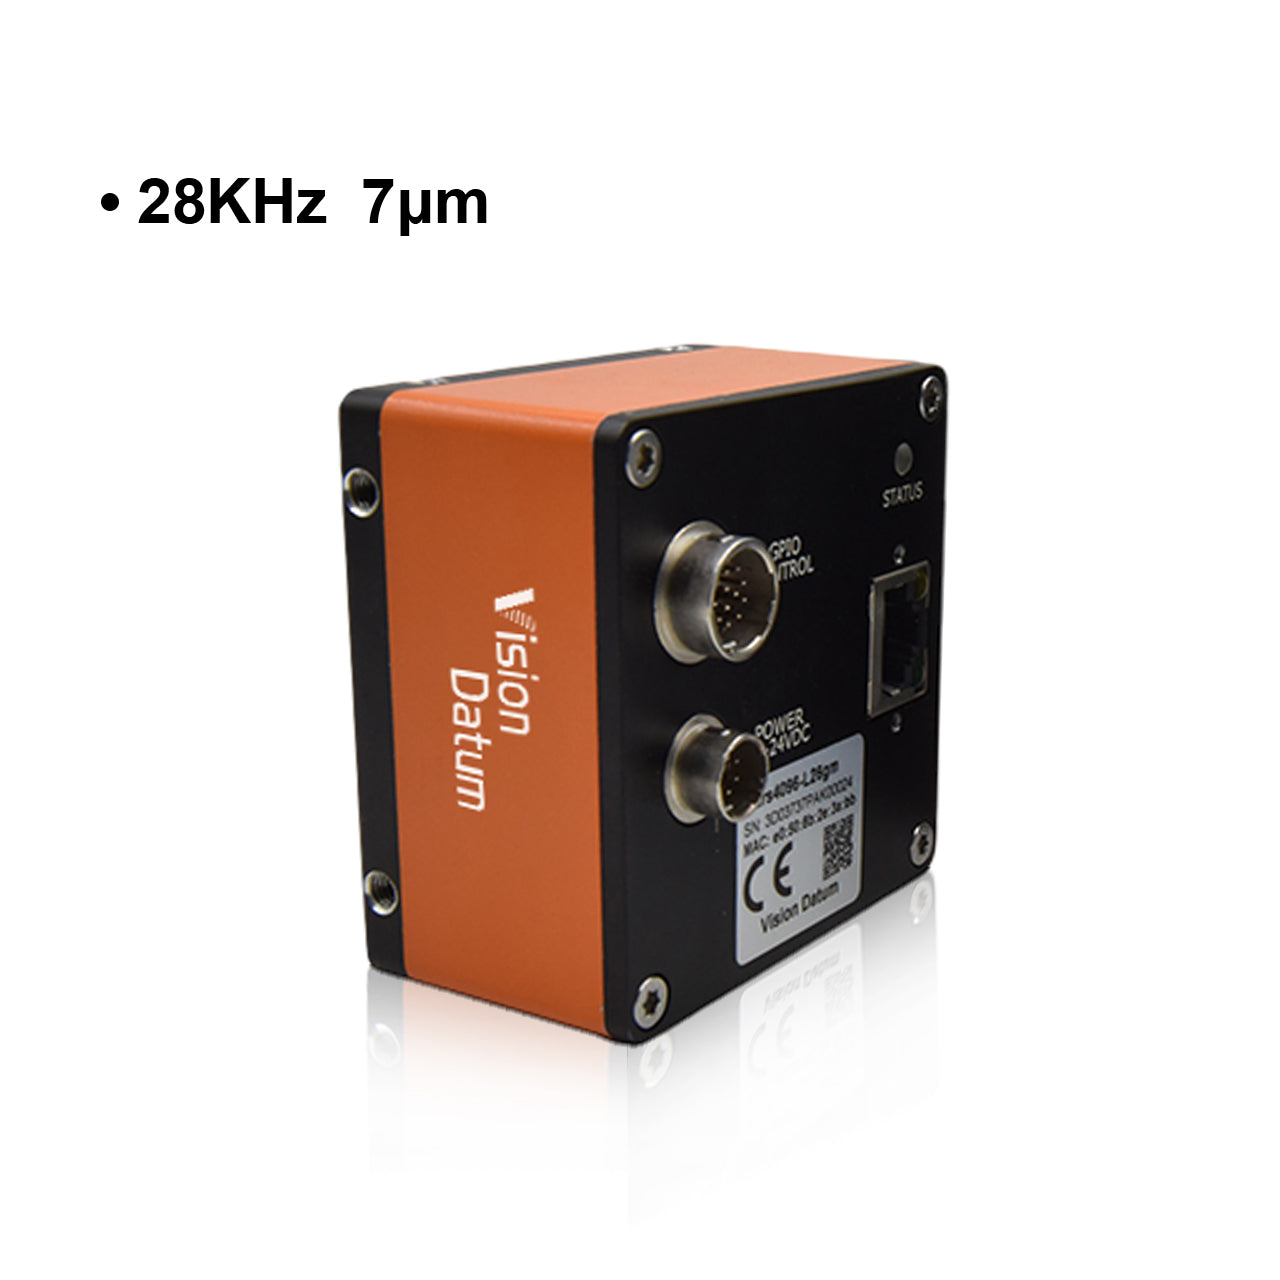 Камера линейного сканирования GigE с креплением M42, 4k, 28 кГц, 7 мкм 